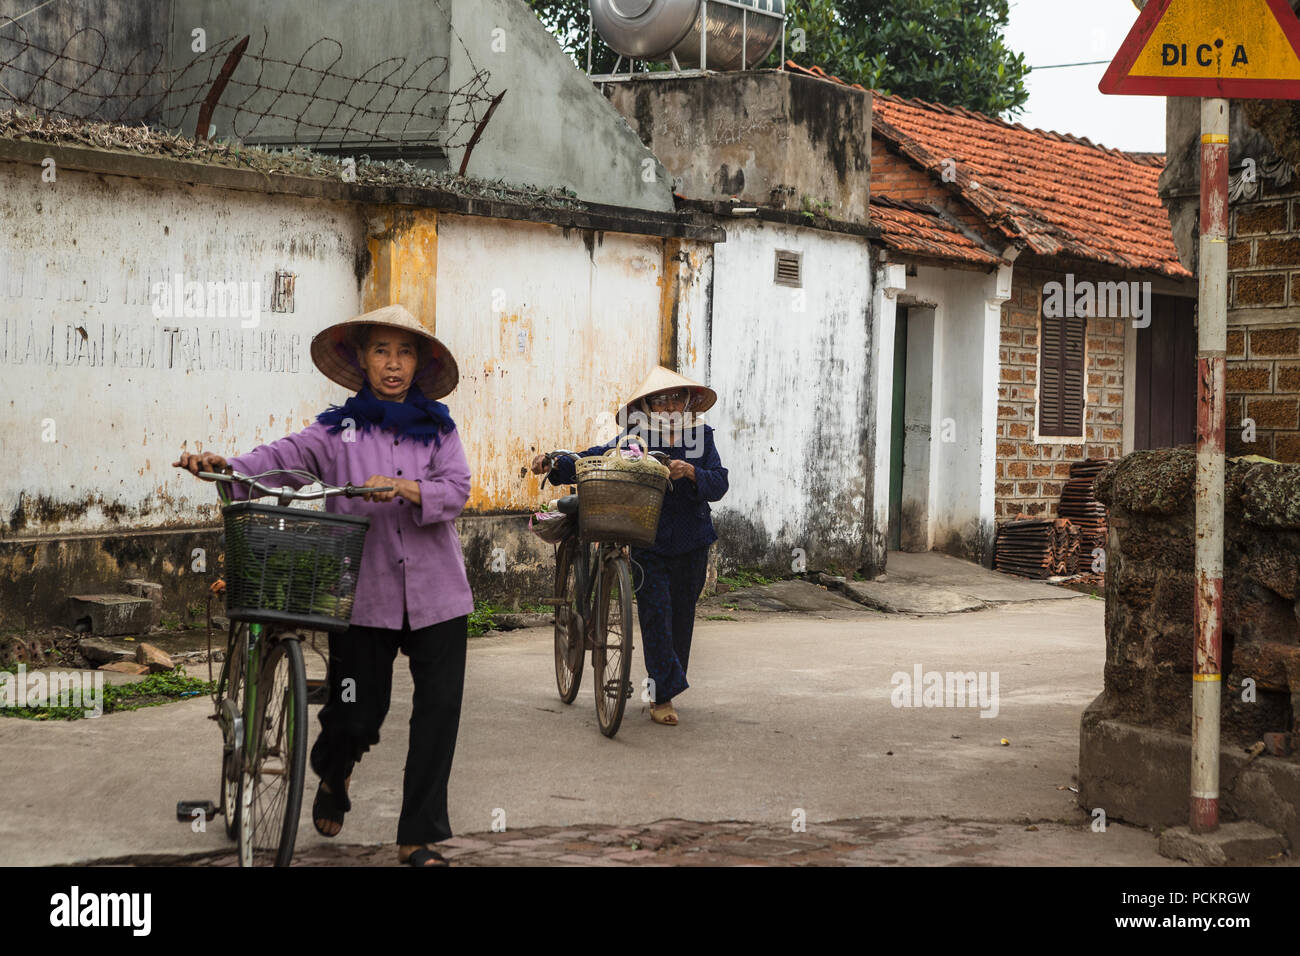 Duong Lam, Ha Noi, Vietnam-April 18, 2018: vietnamesische Frau mit dem Fahrrad zum Einkaufen in den ländlichen Gebieten von Ha Noi. Sie tragen, was sie kauften von tradit Stockfoto